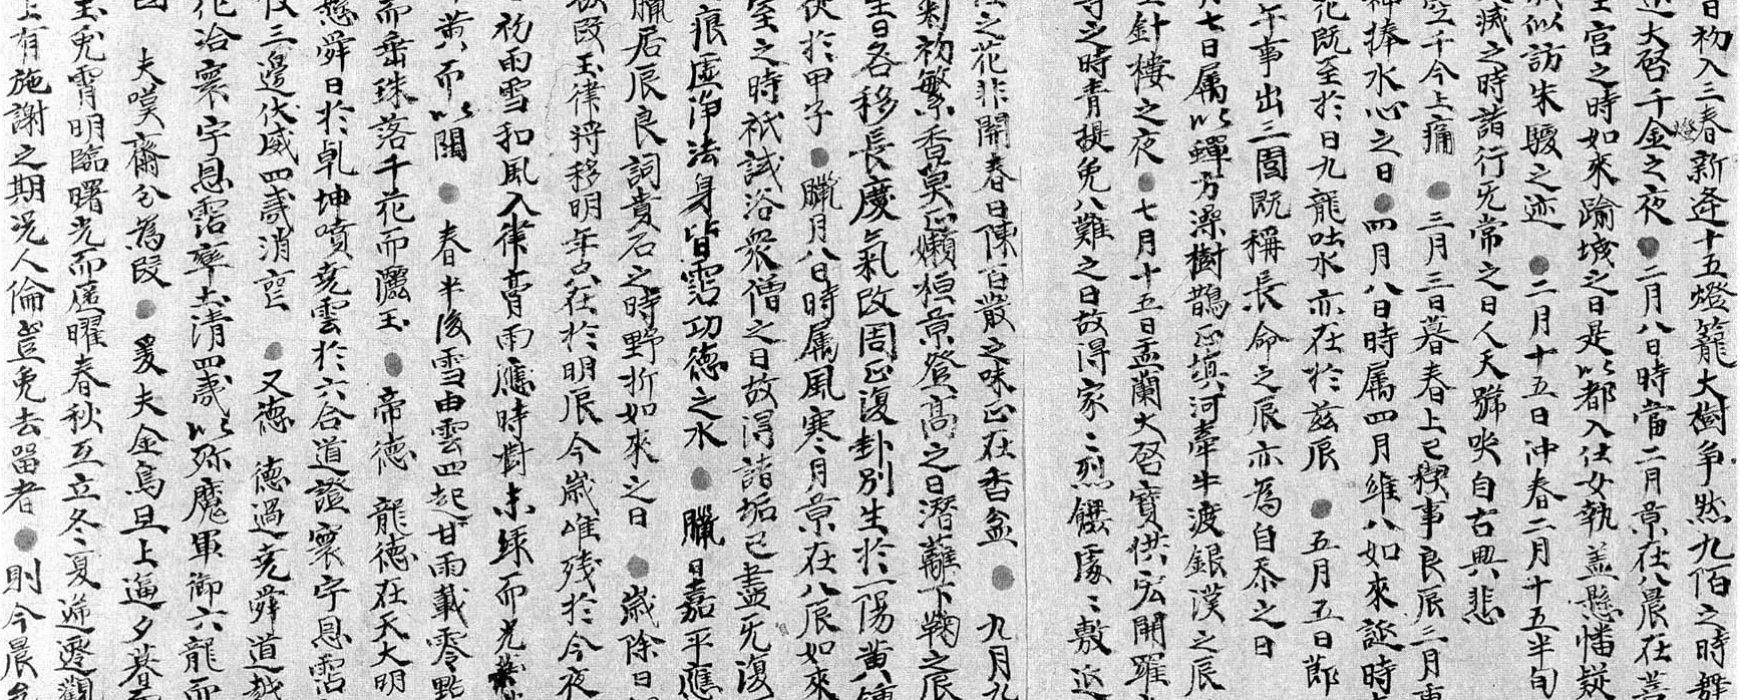 敦煌写本斋文的分类丶定名及其文本结构